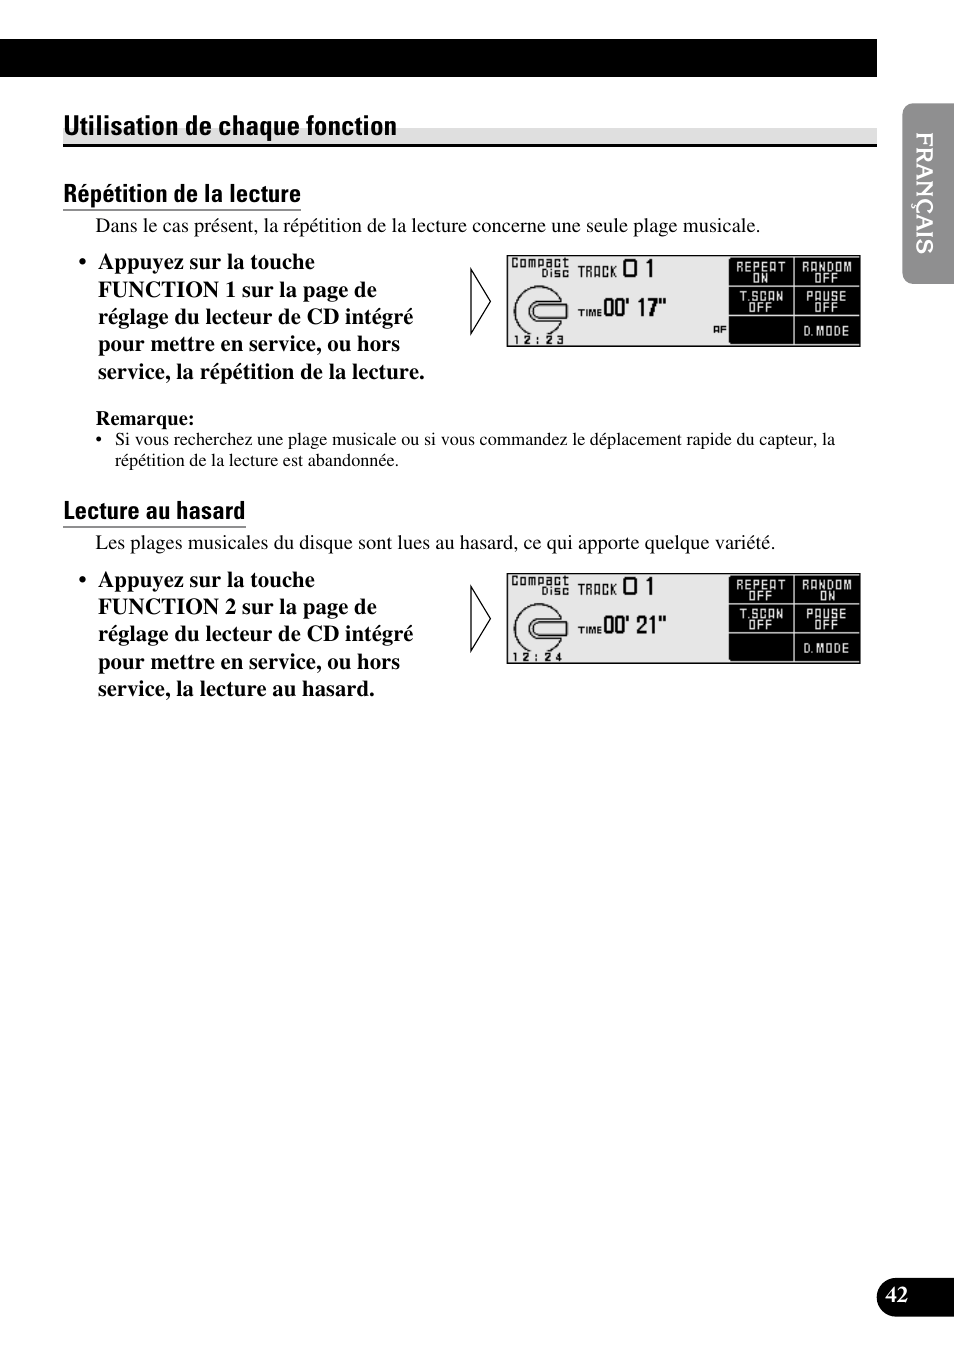 Utilisation de chaque fonction, Répétition de la lecture, Lecture au hasard | Pioneer RS-D7R Manuel d'utilisation | Page 43 / 91